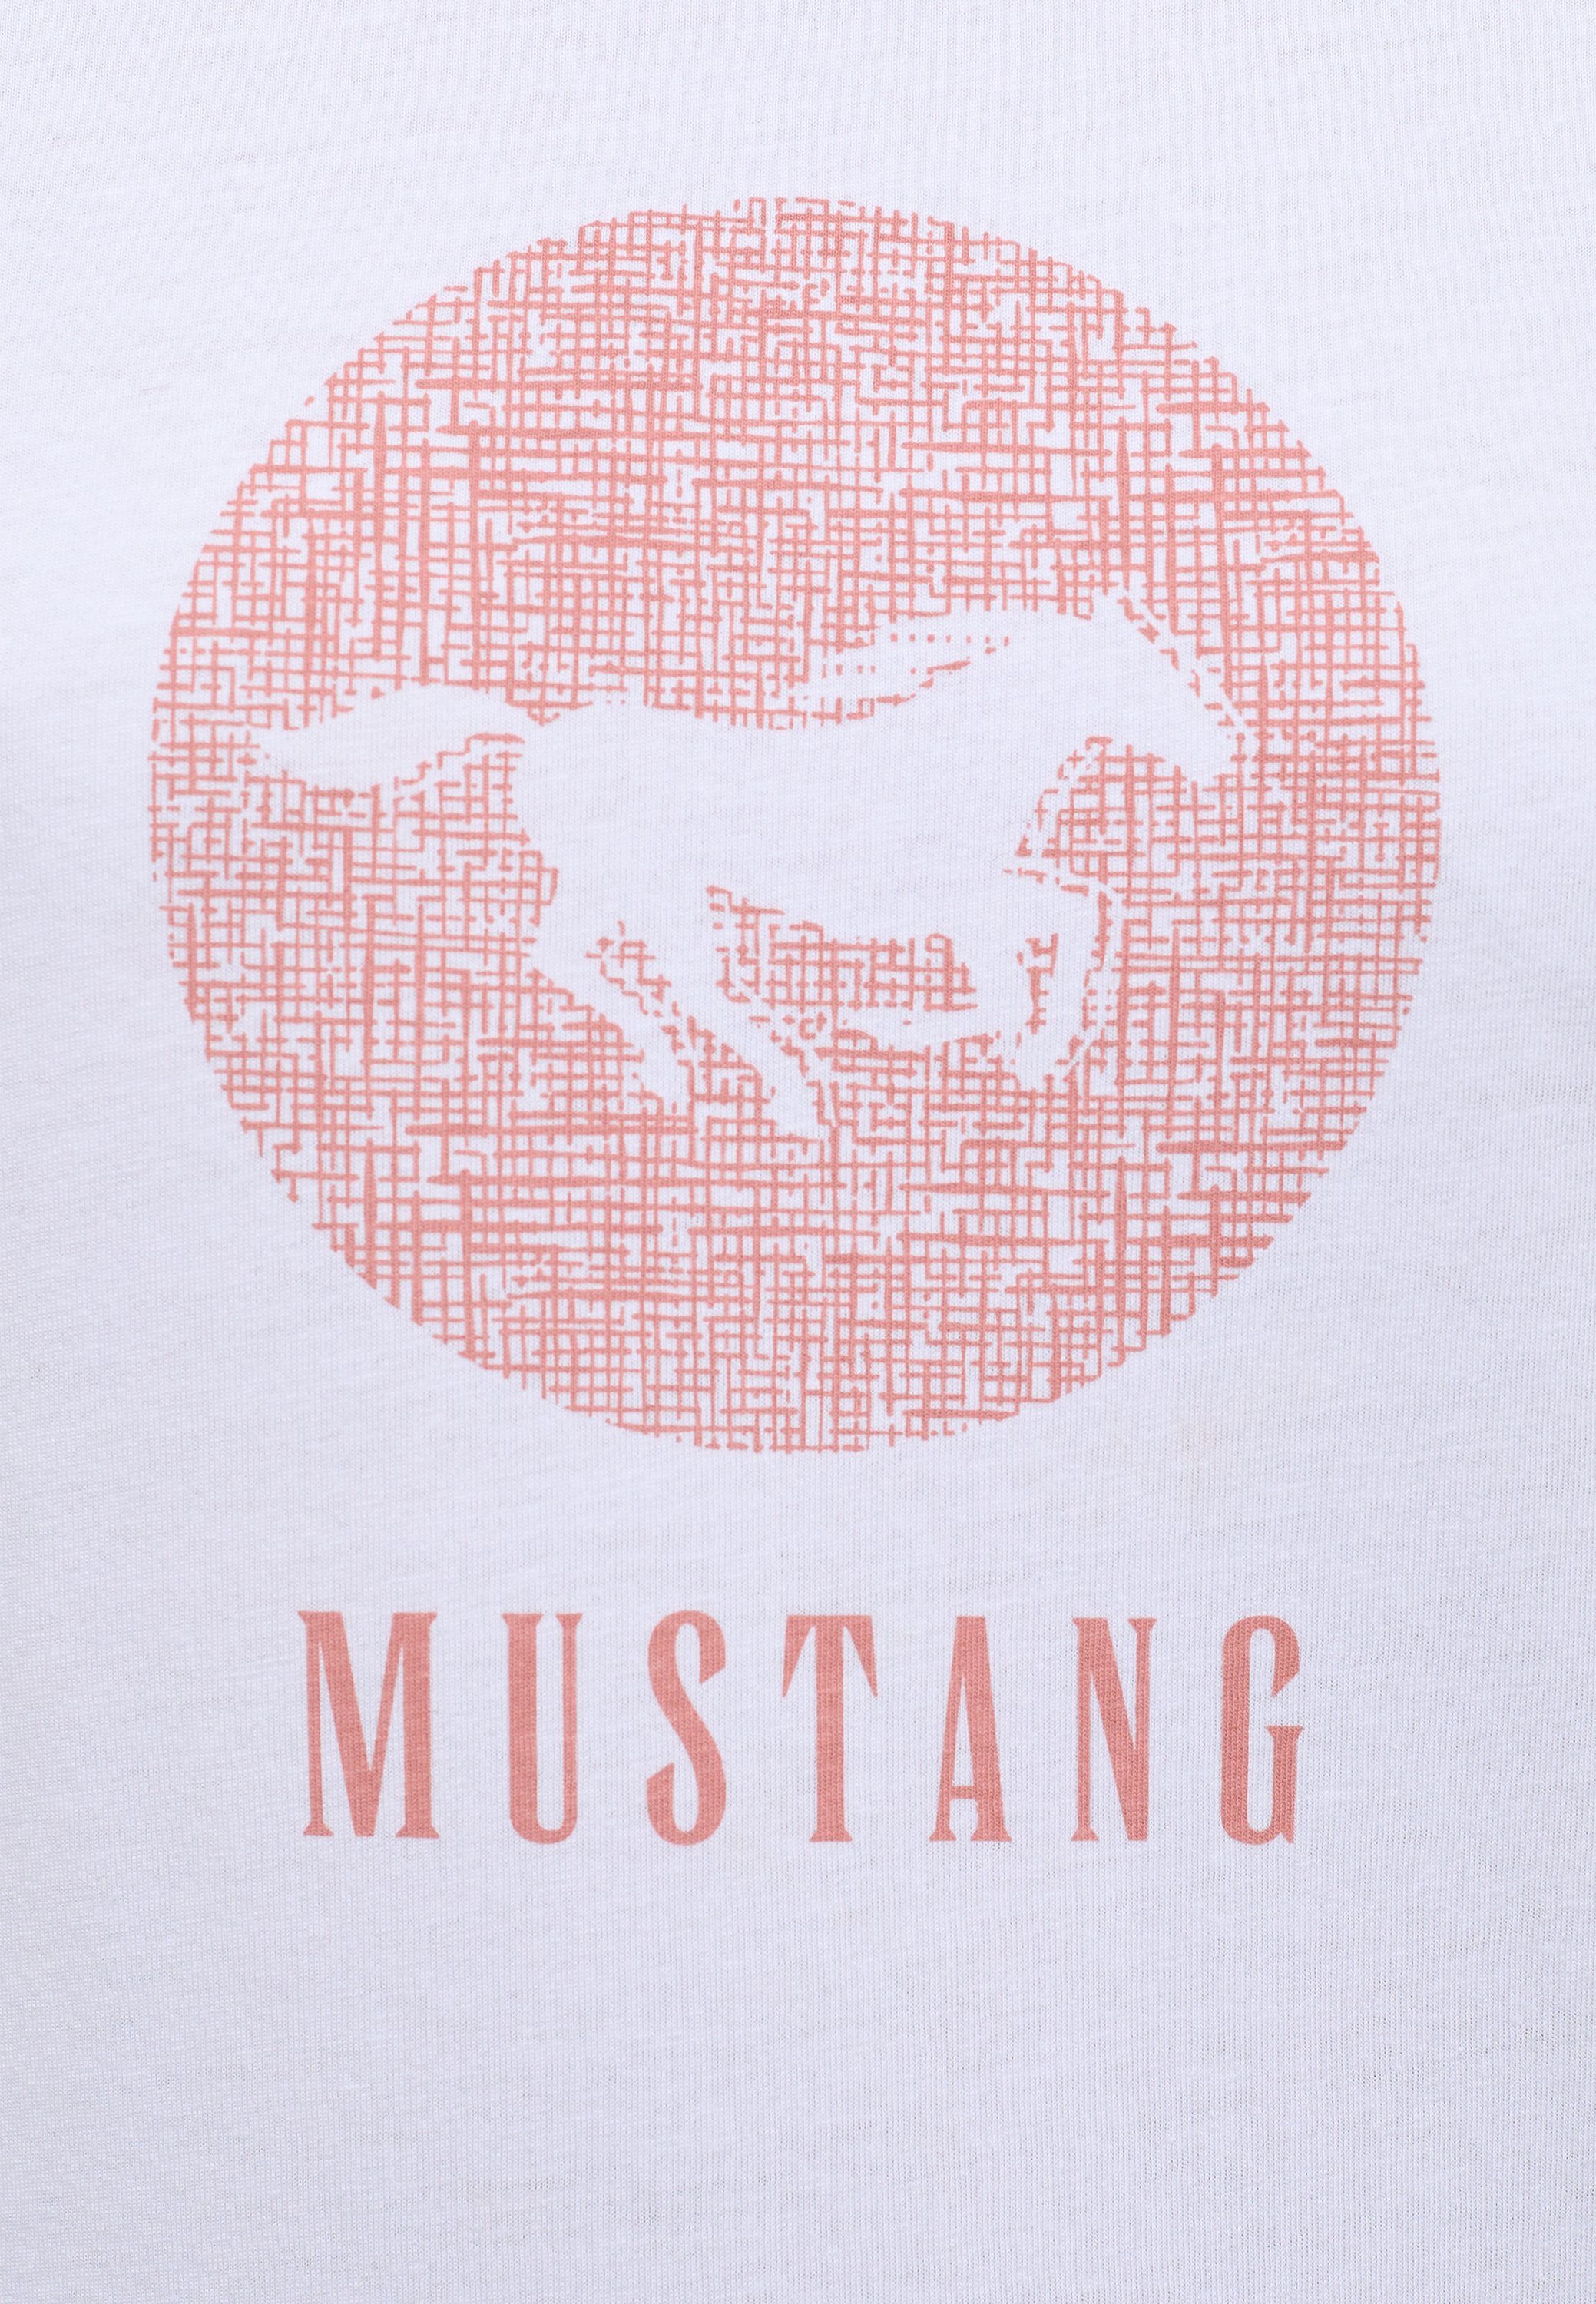 Print-Shirt Mustang MUSTANG T-Shirt weiß Kurzarmshirt